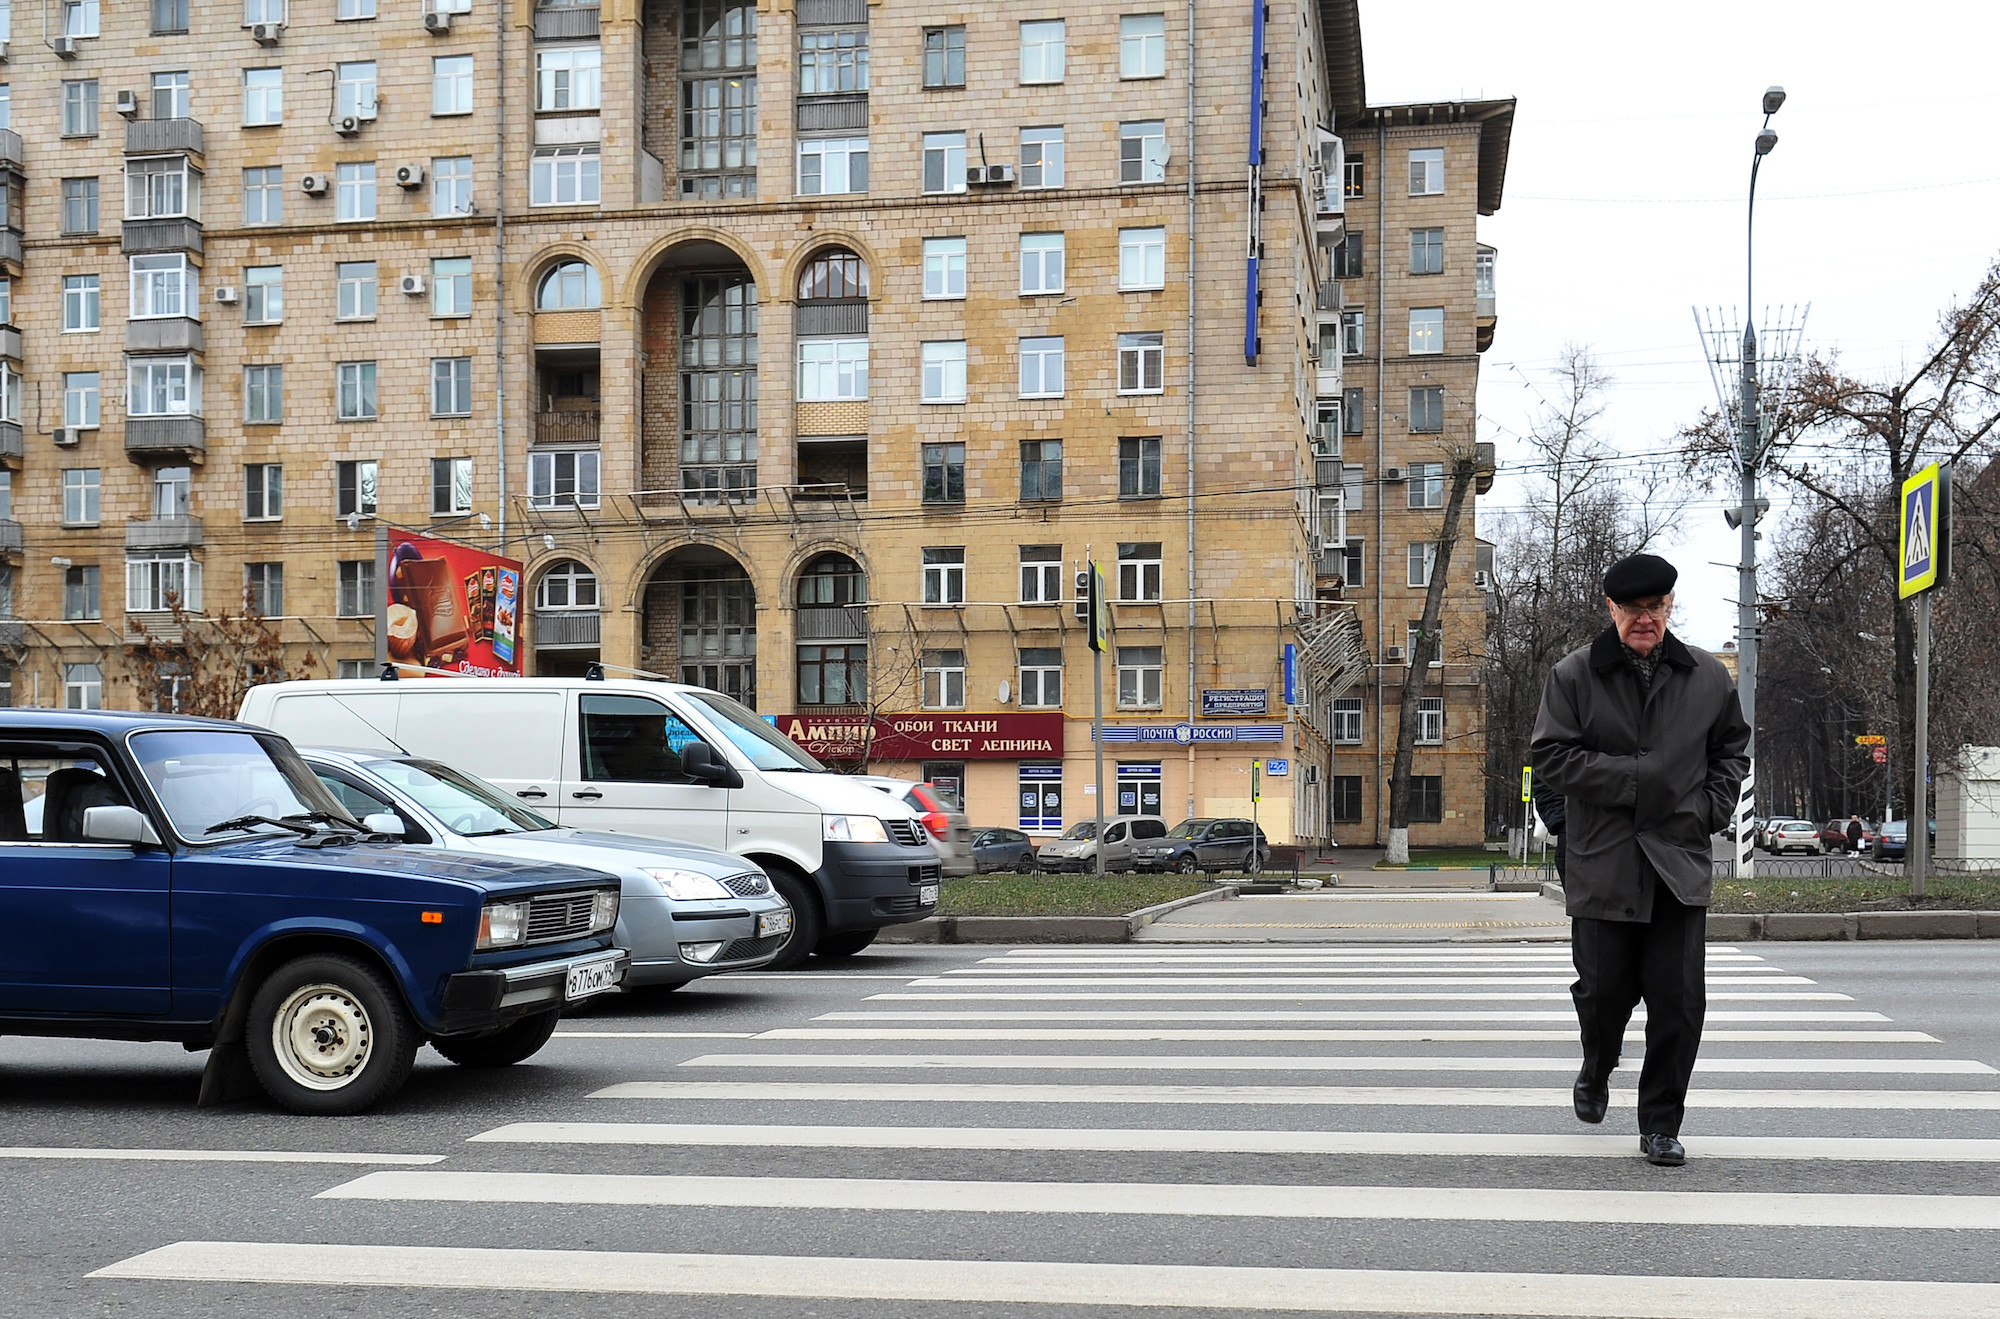 Пешеход россии